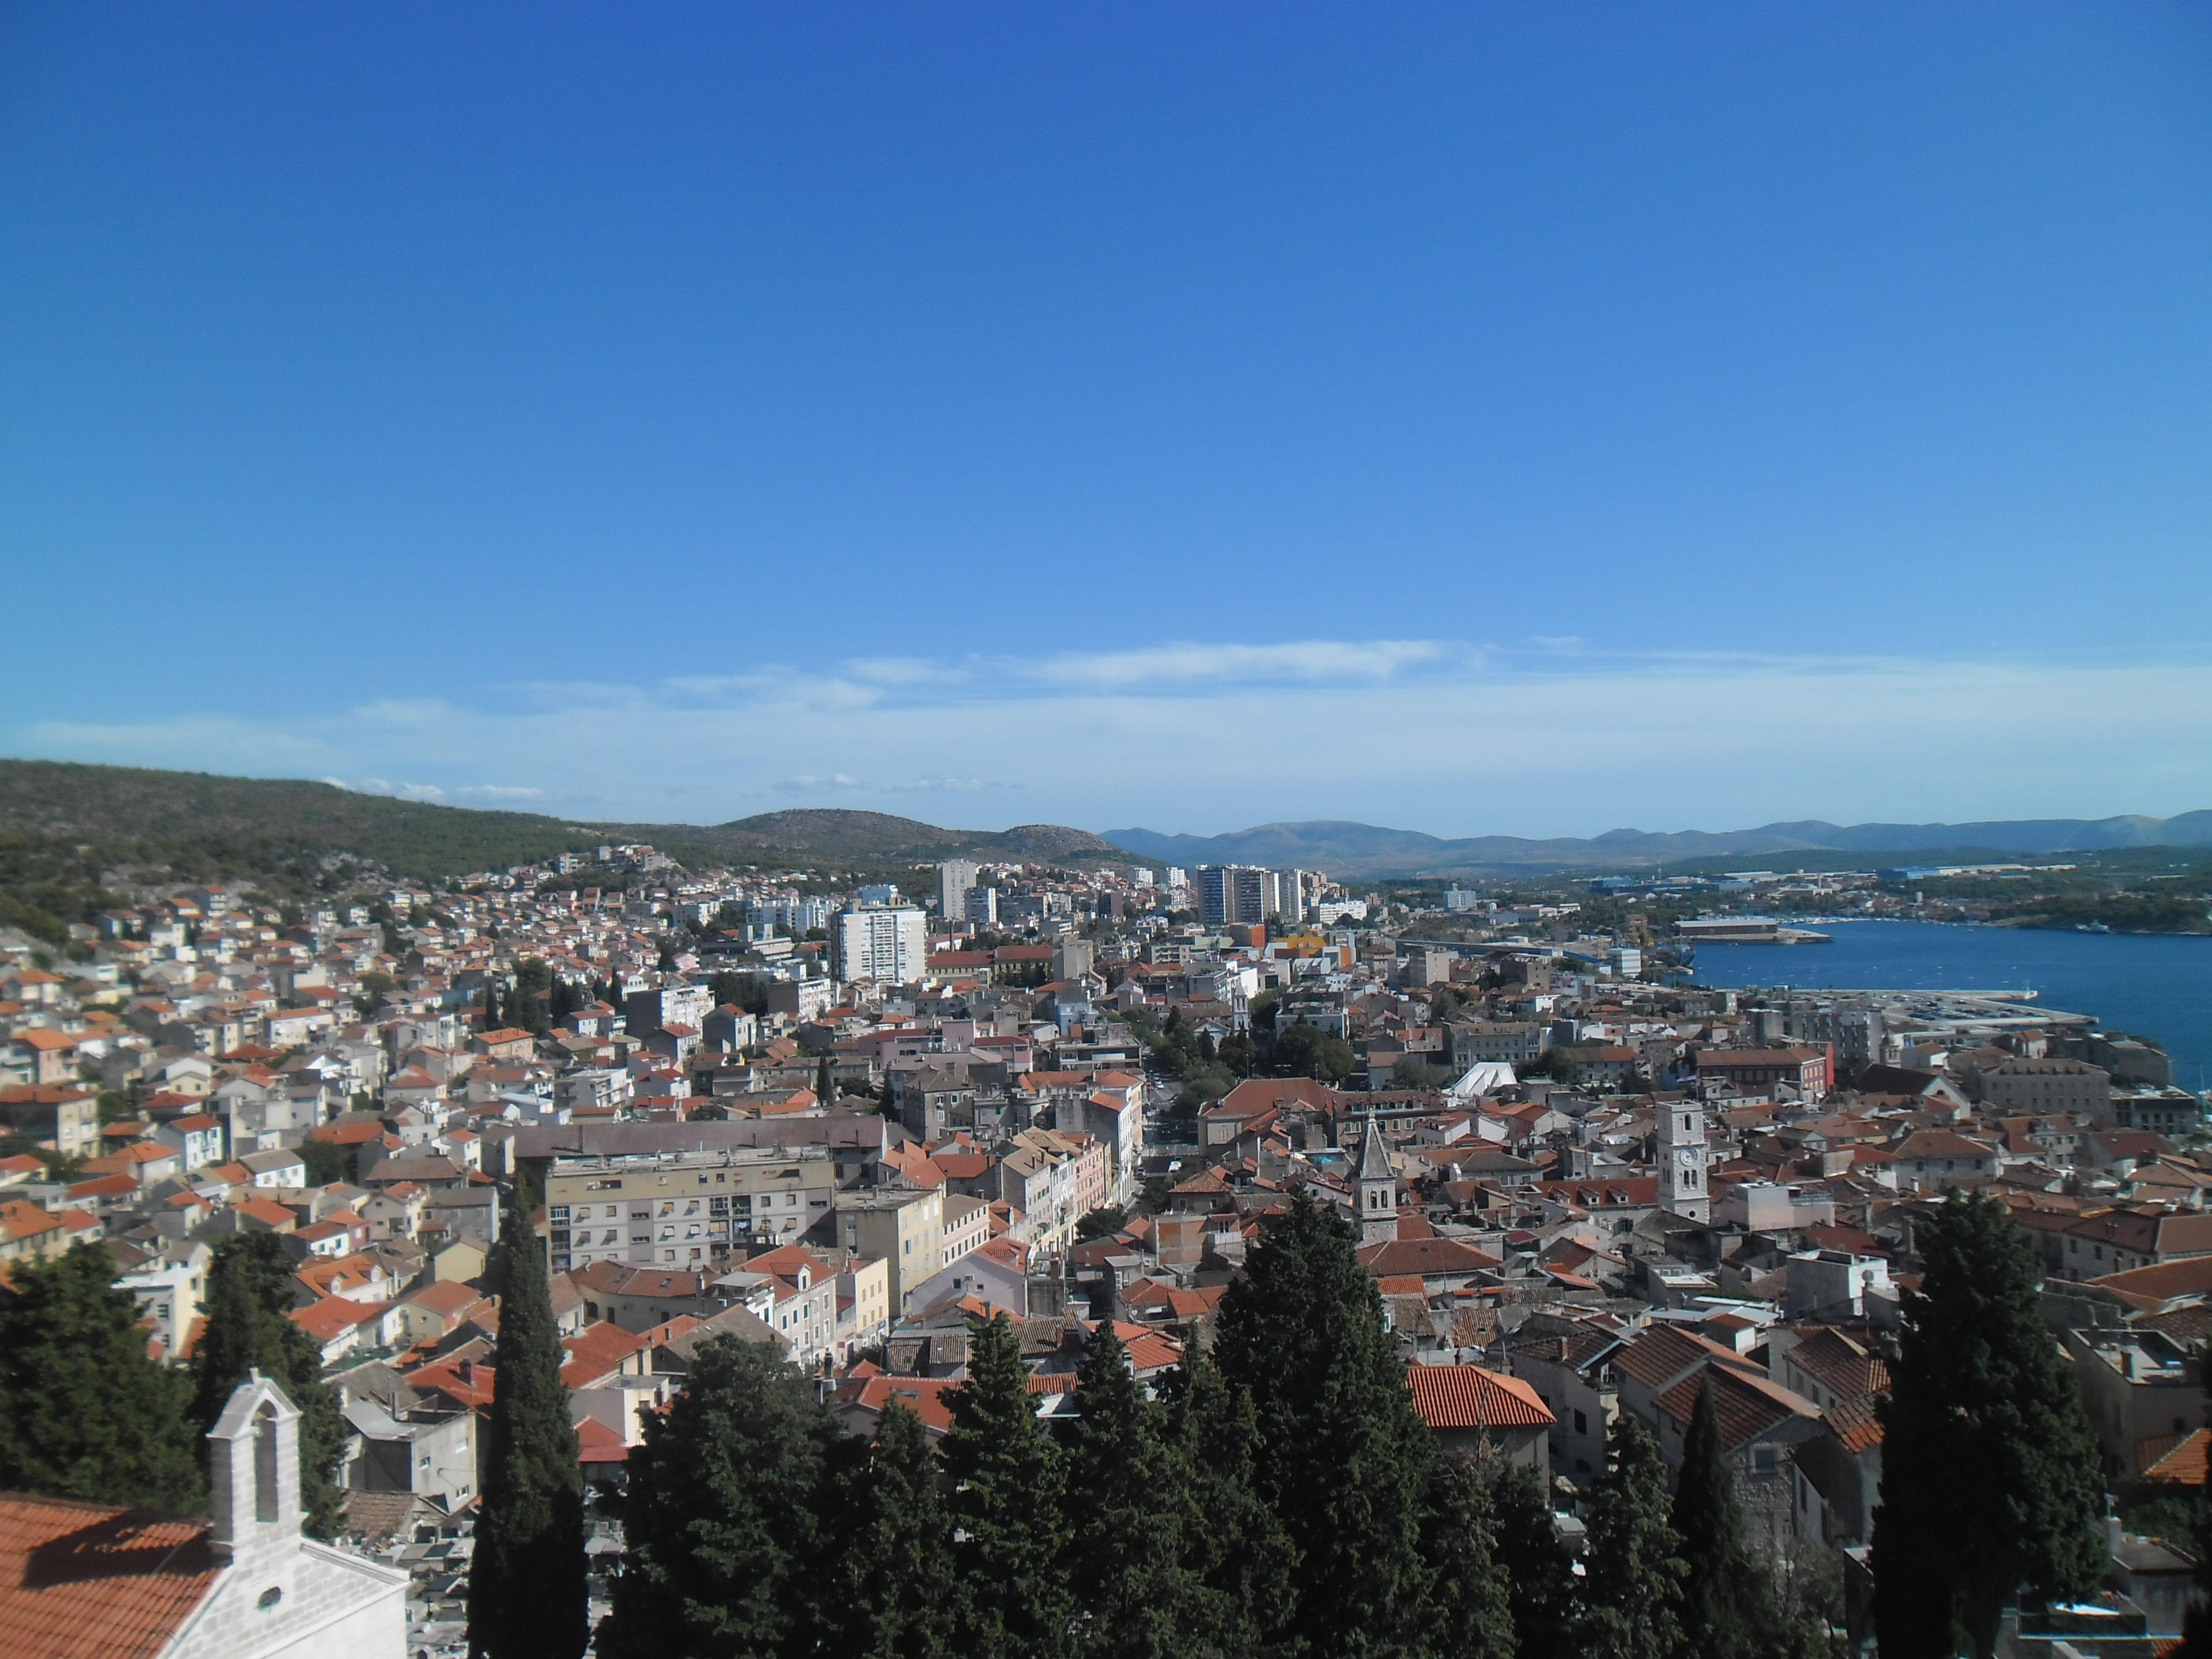 Zemljotres u Hrvatskoj, osjetio se jak udar: "Kao atomska bomba da pada"